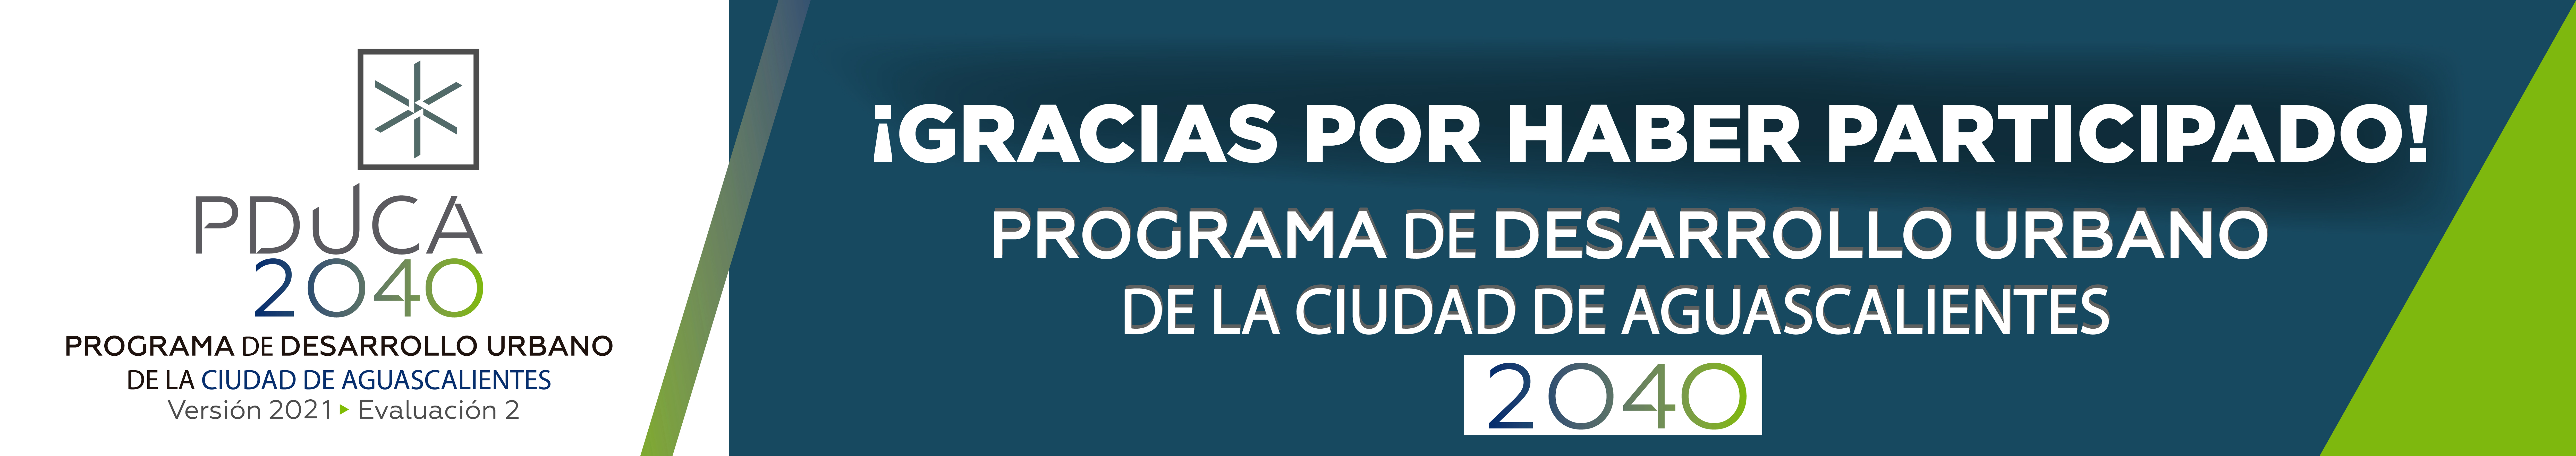 Consulta Programa de Desarrollo Urbano de la Ciudad de Aguascalientes 2040 